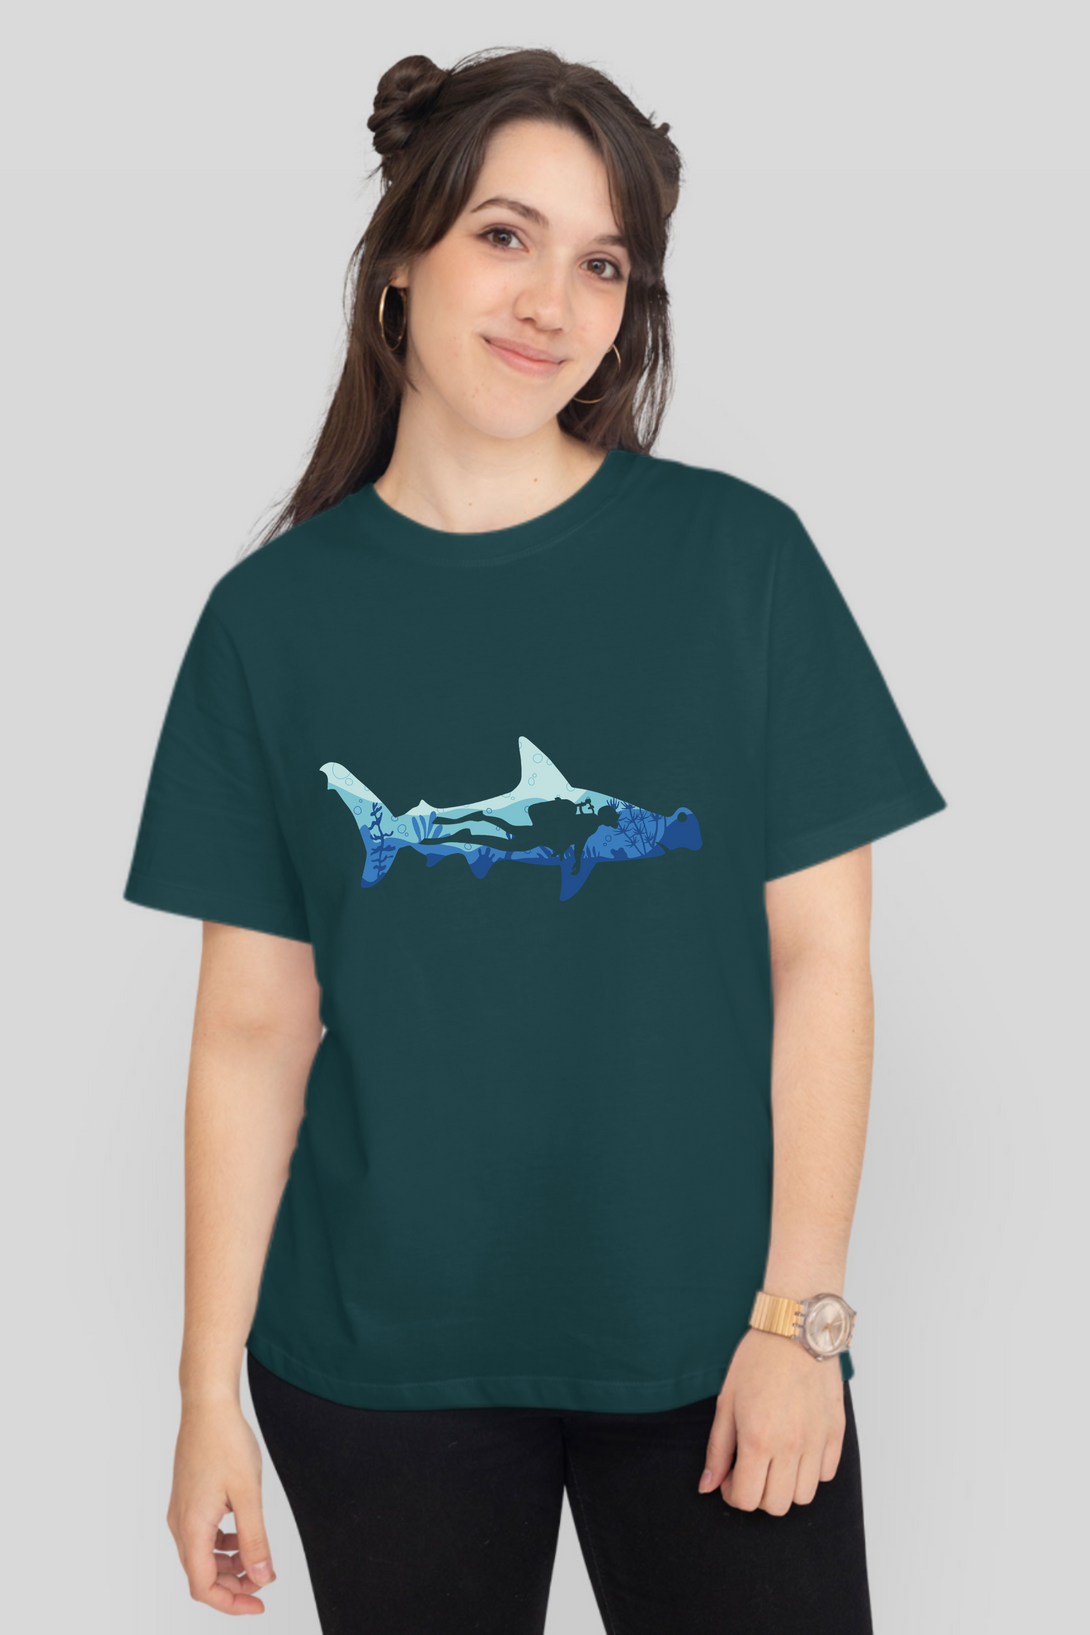 Hammerhead Shark Dive Printed T-Shirt For Women - WowWaves - 8